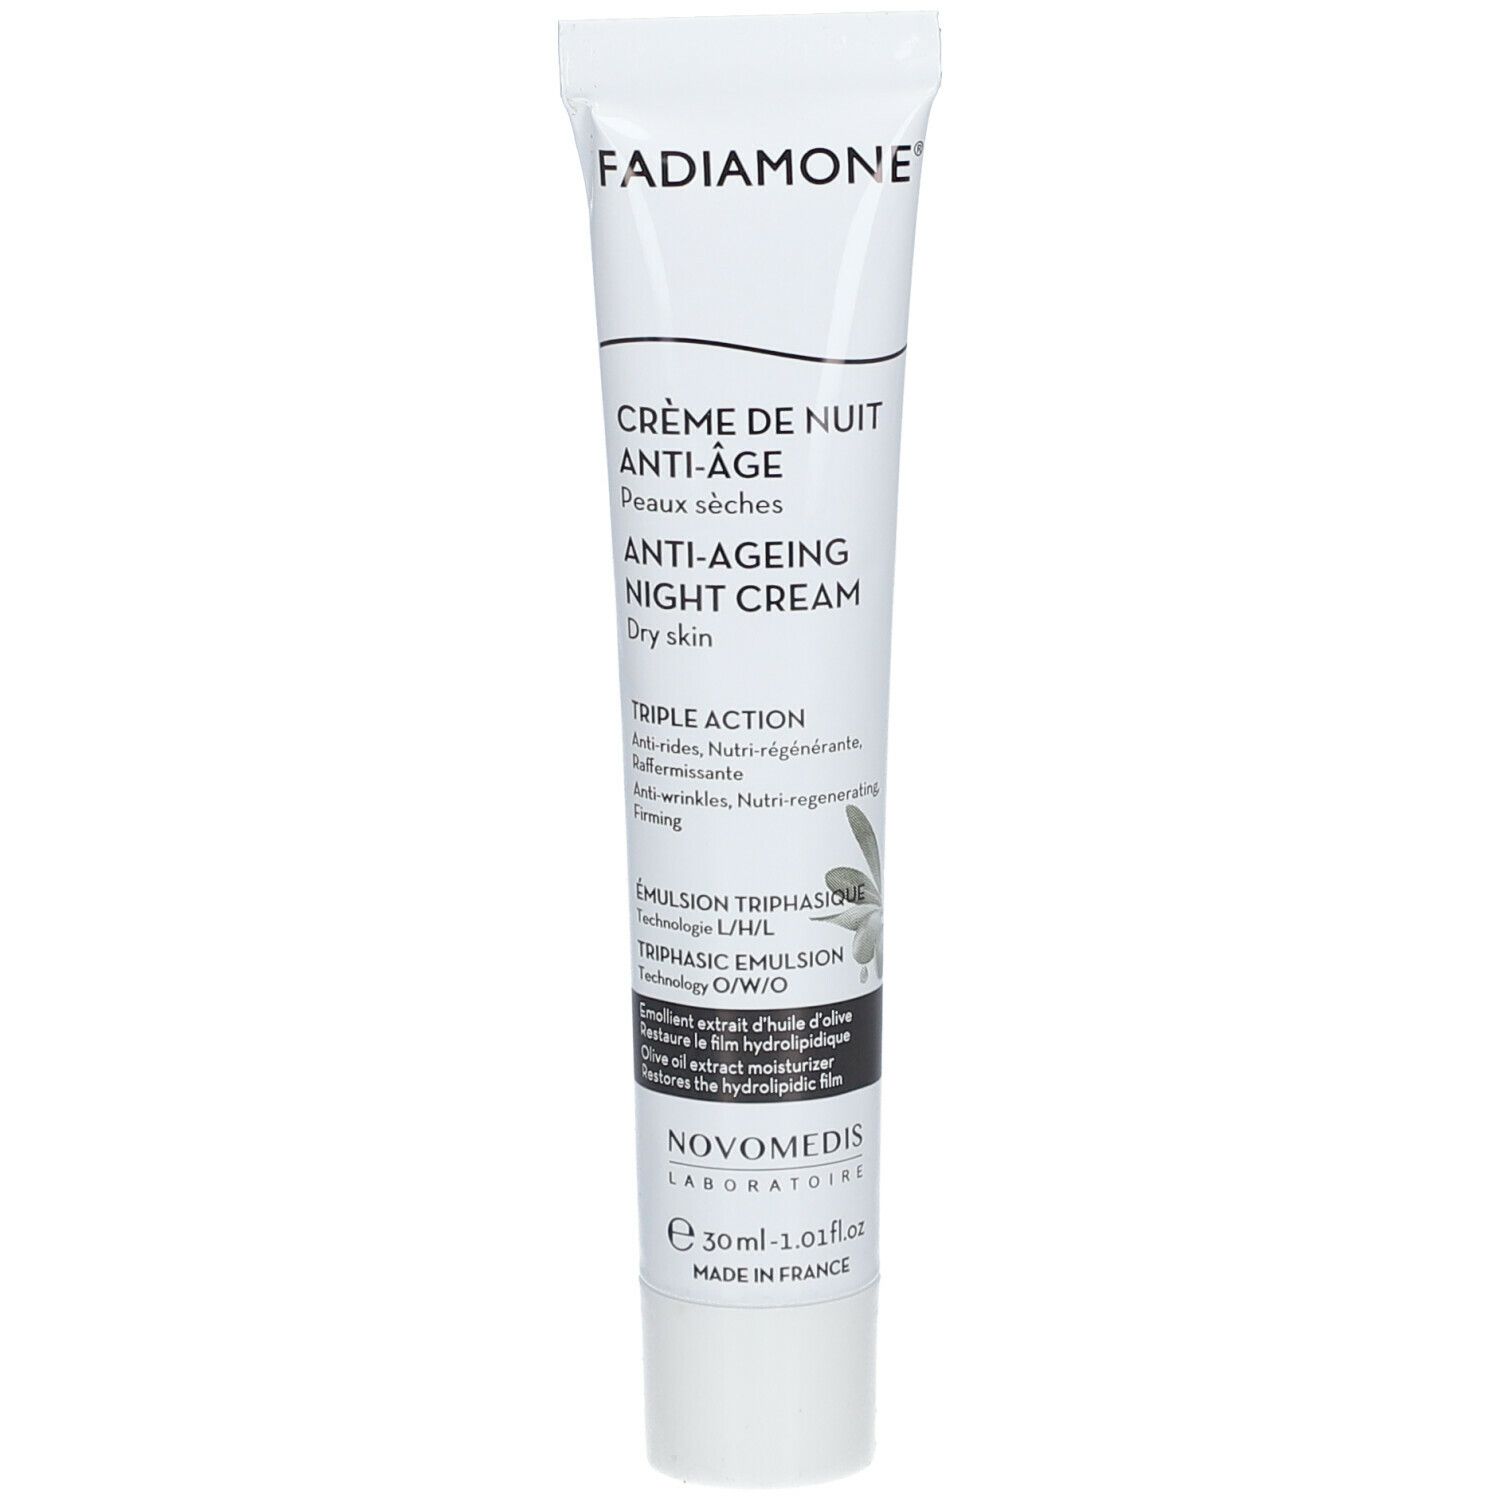 Fadiamone® Crème de nuit anti-age visage